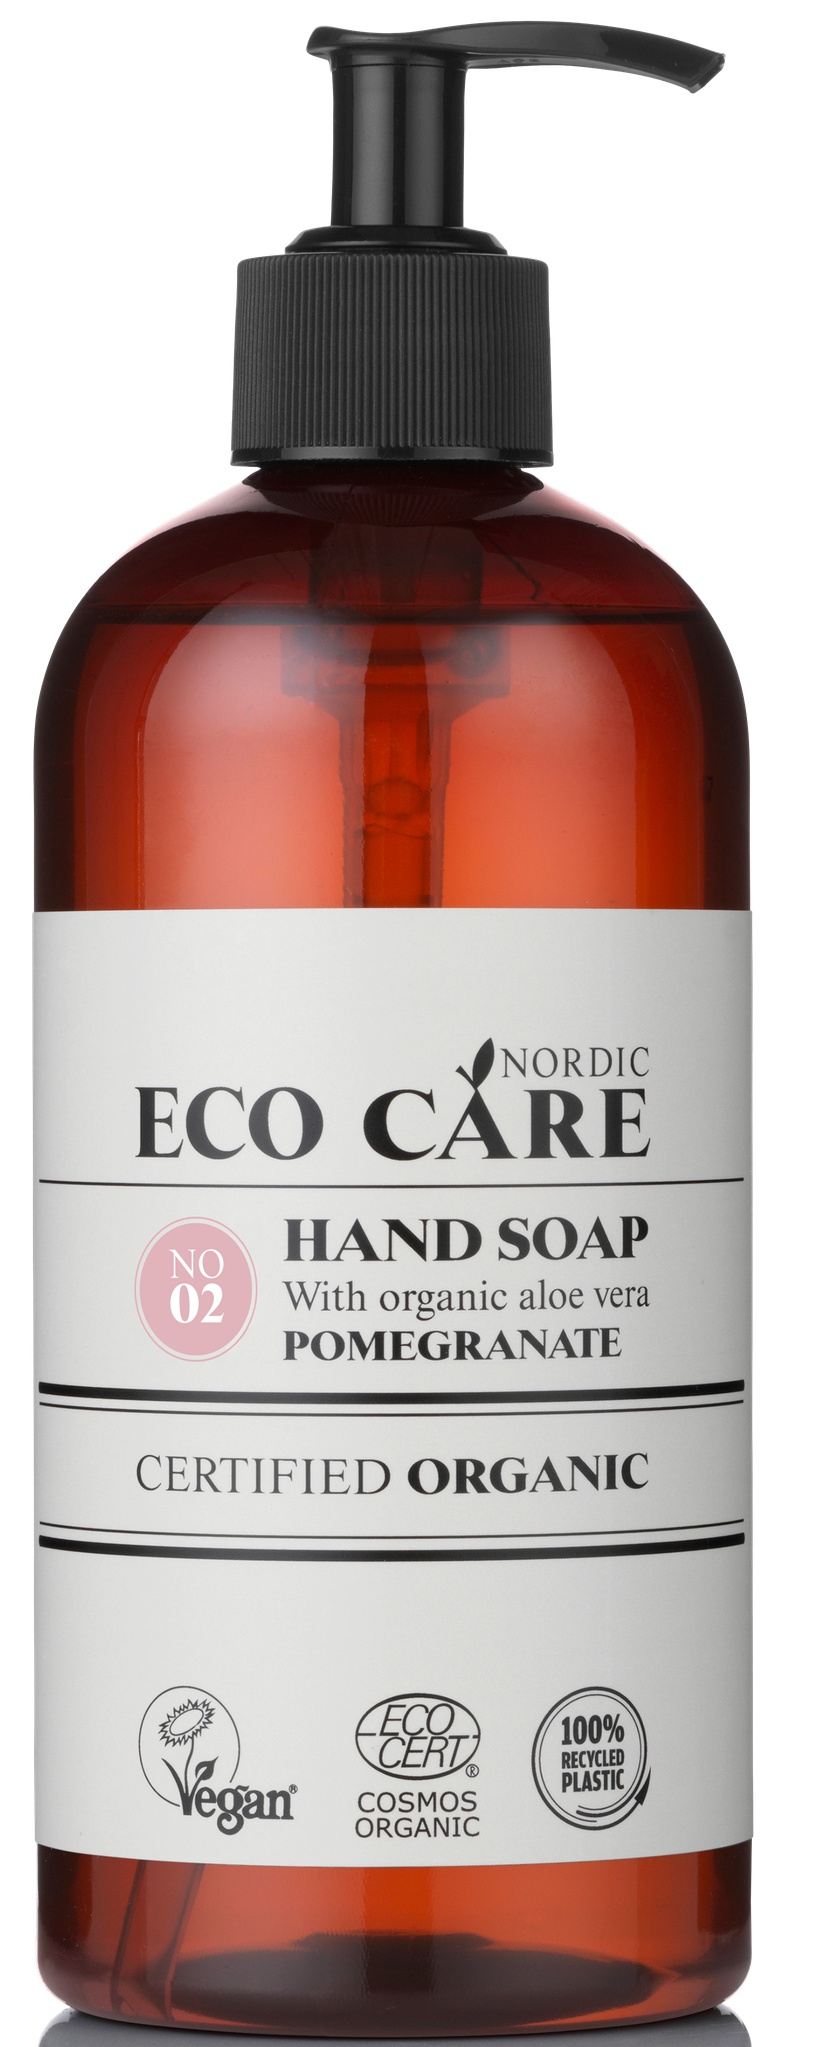 Eco Care Handsoap Pomegranate